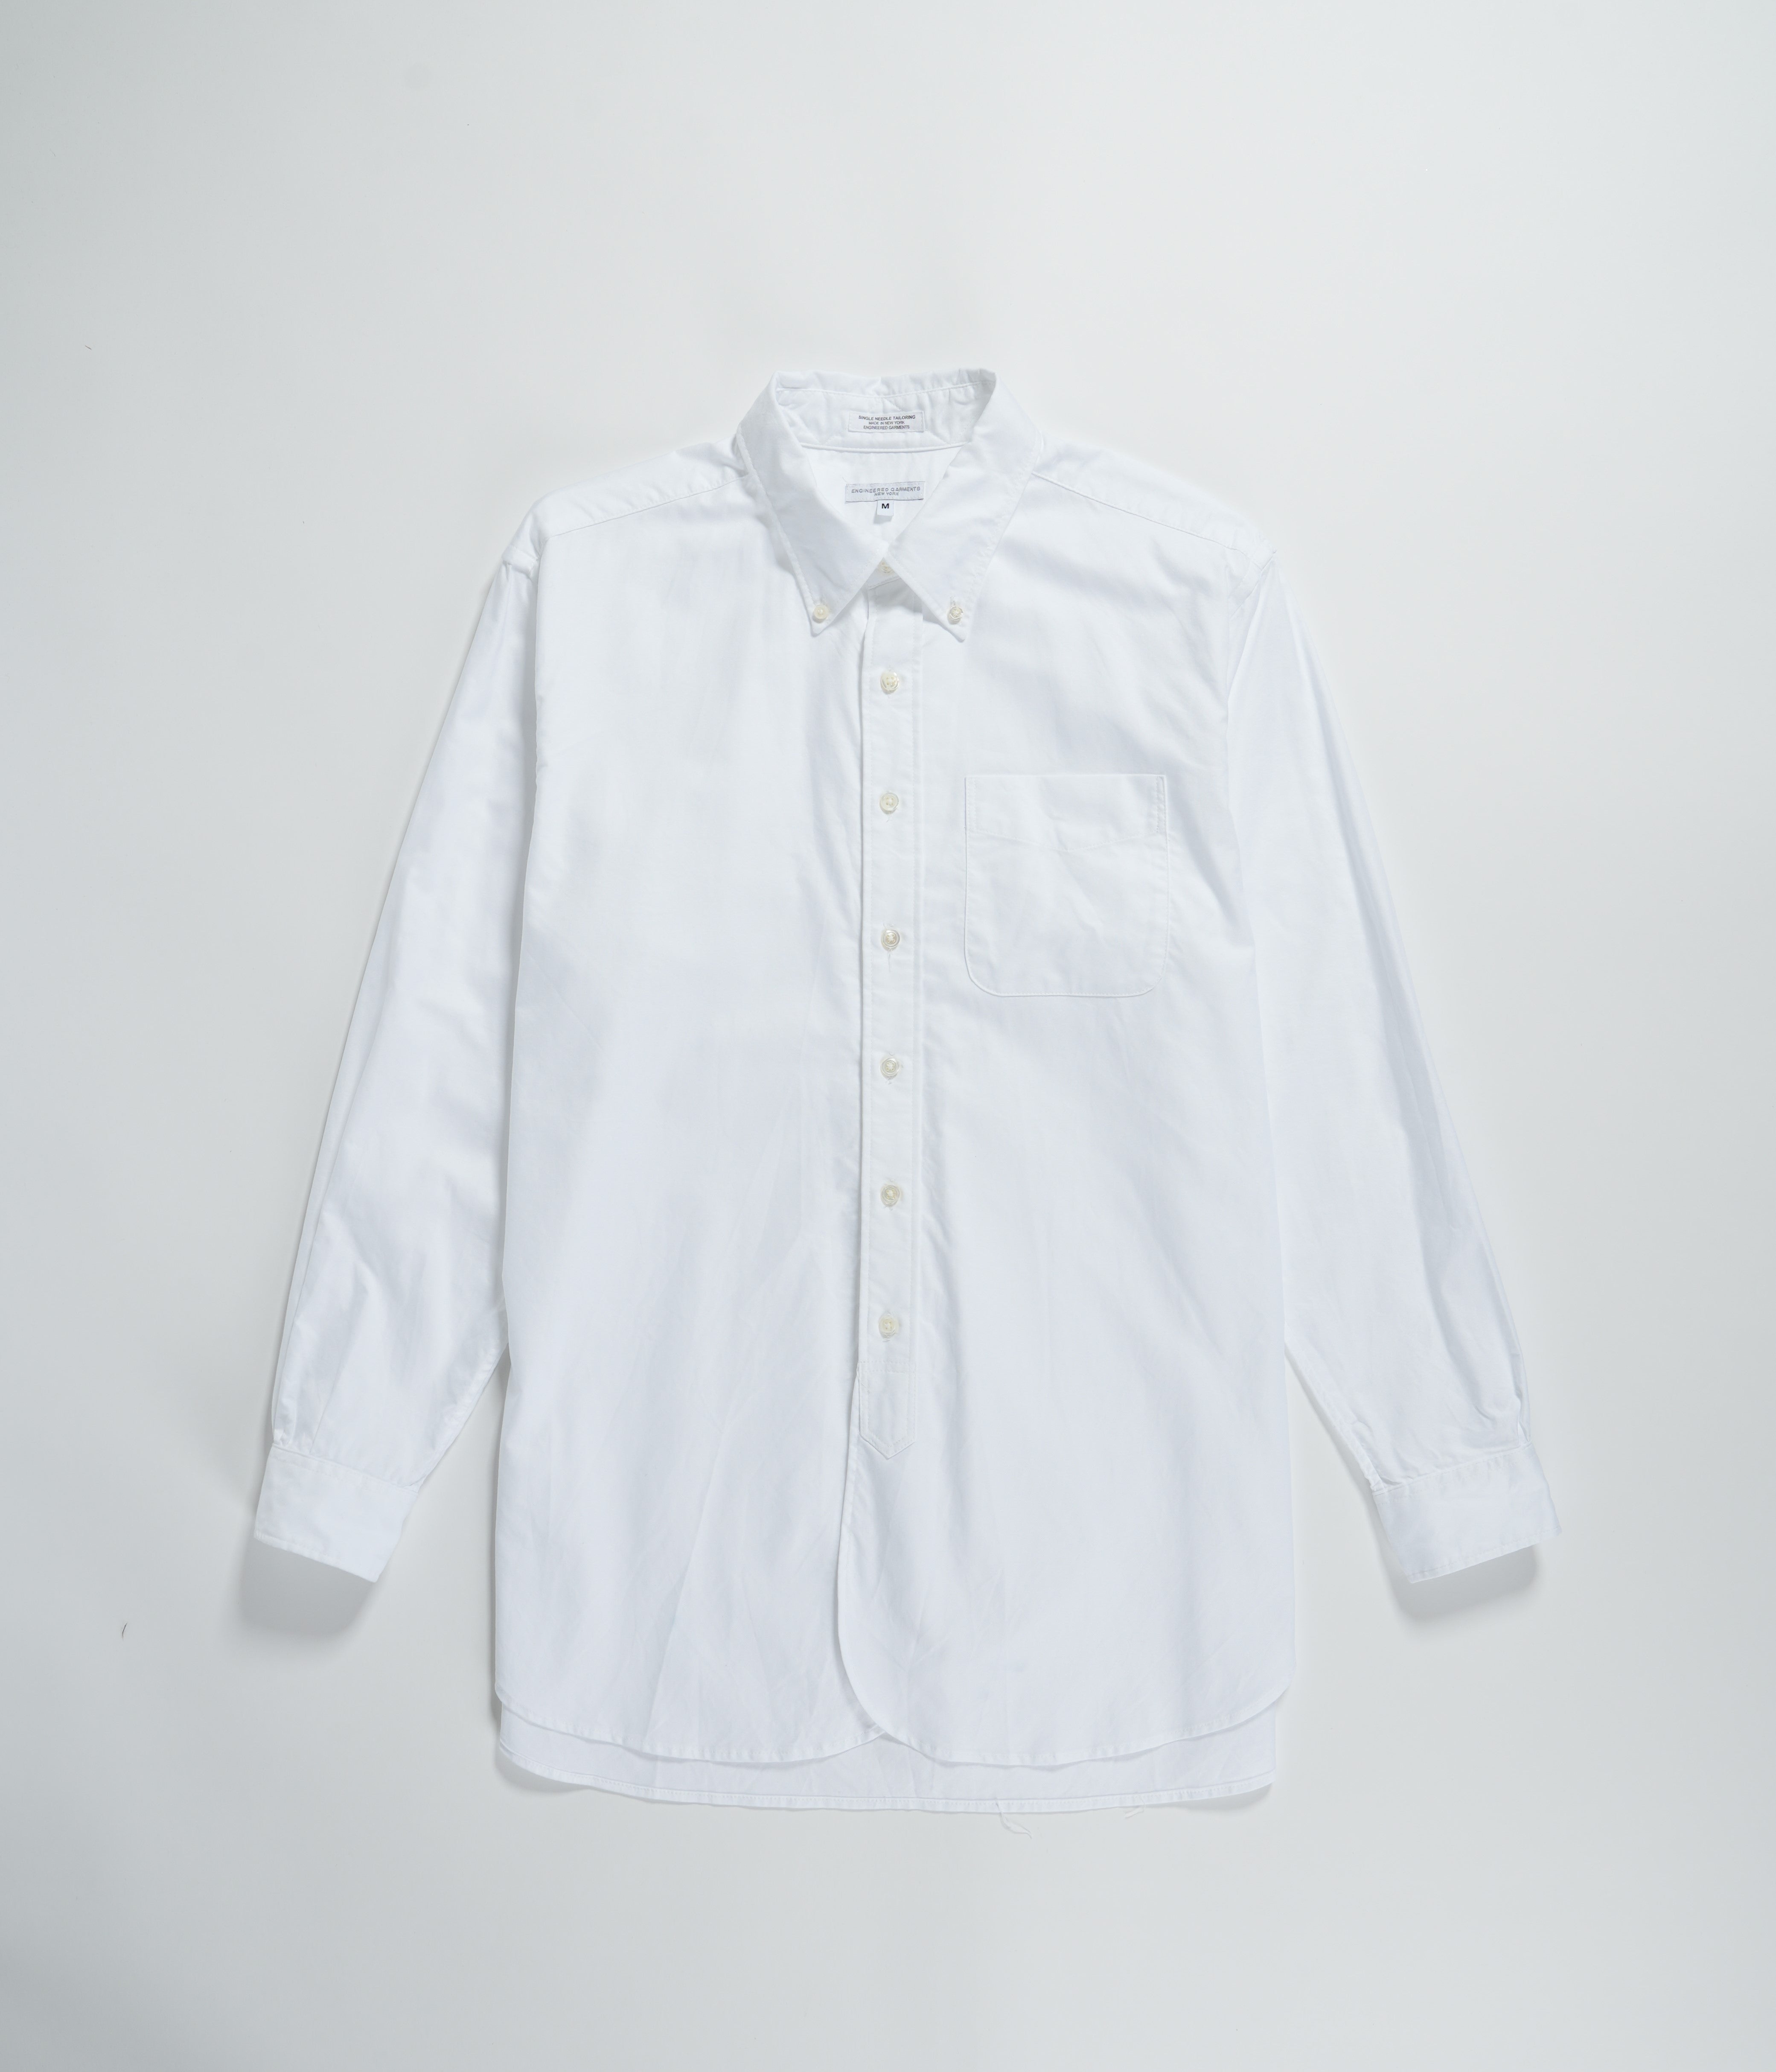 19 Century BD Shirt - White Cotton Oxford